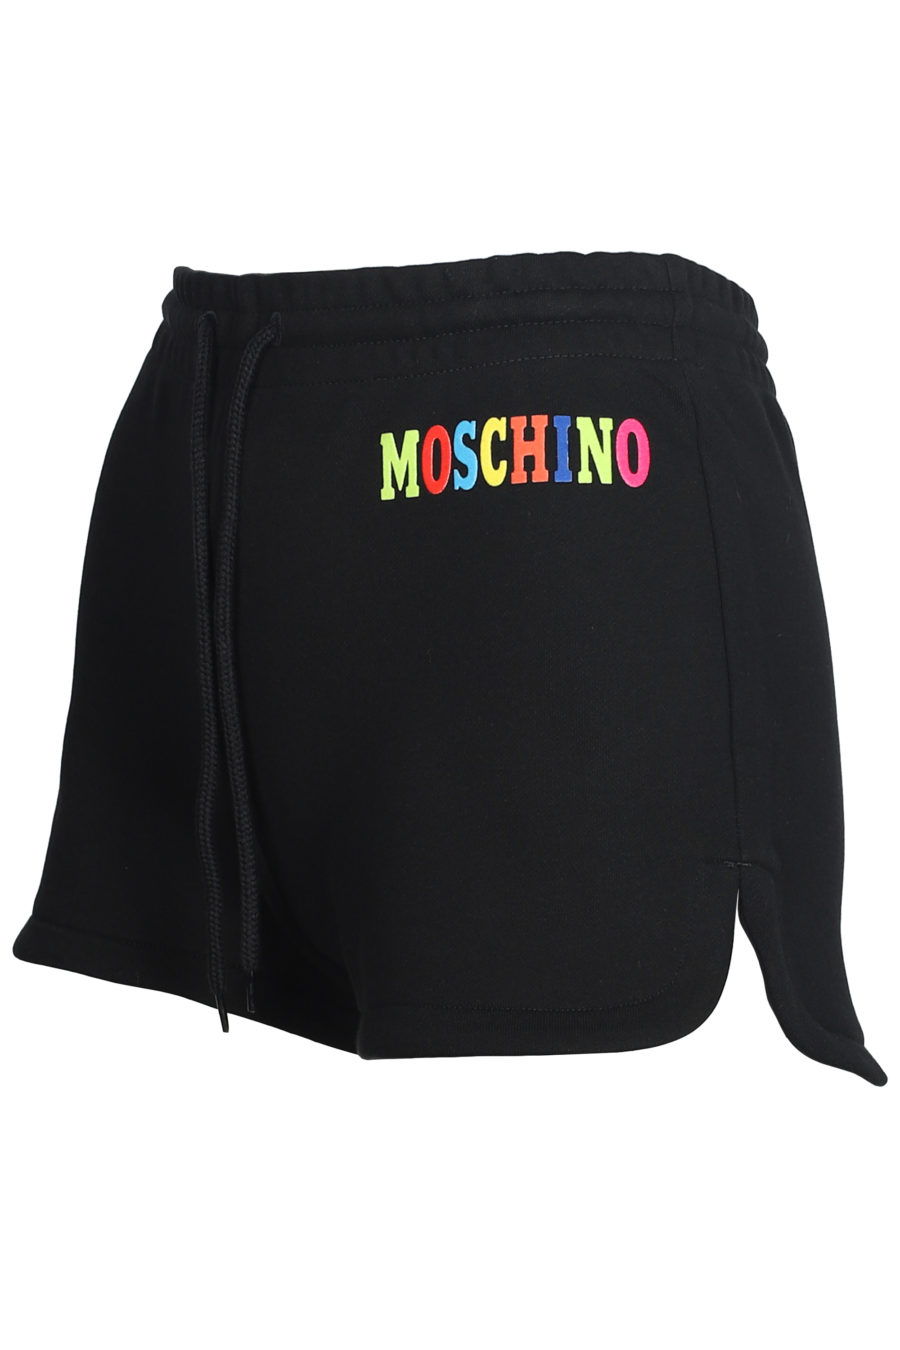 Pantalón corto negro con logo de colores - IMG 5603